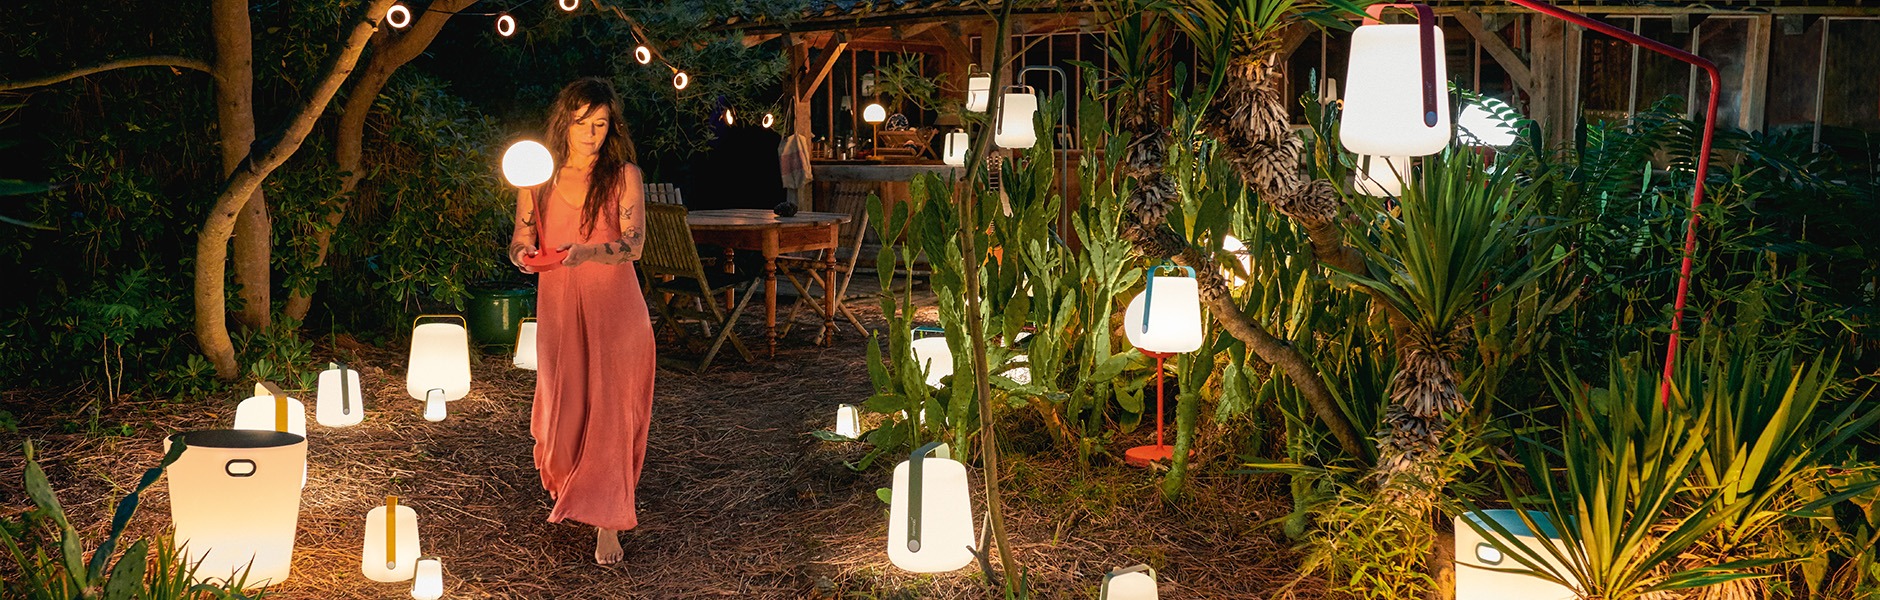 Stimmungsvolle Gartenbeleuchtung – die perfekte Leuchte für jede Situation